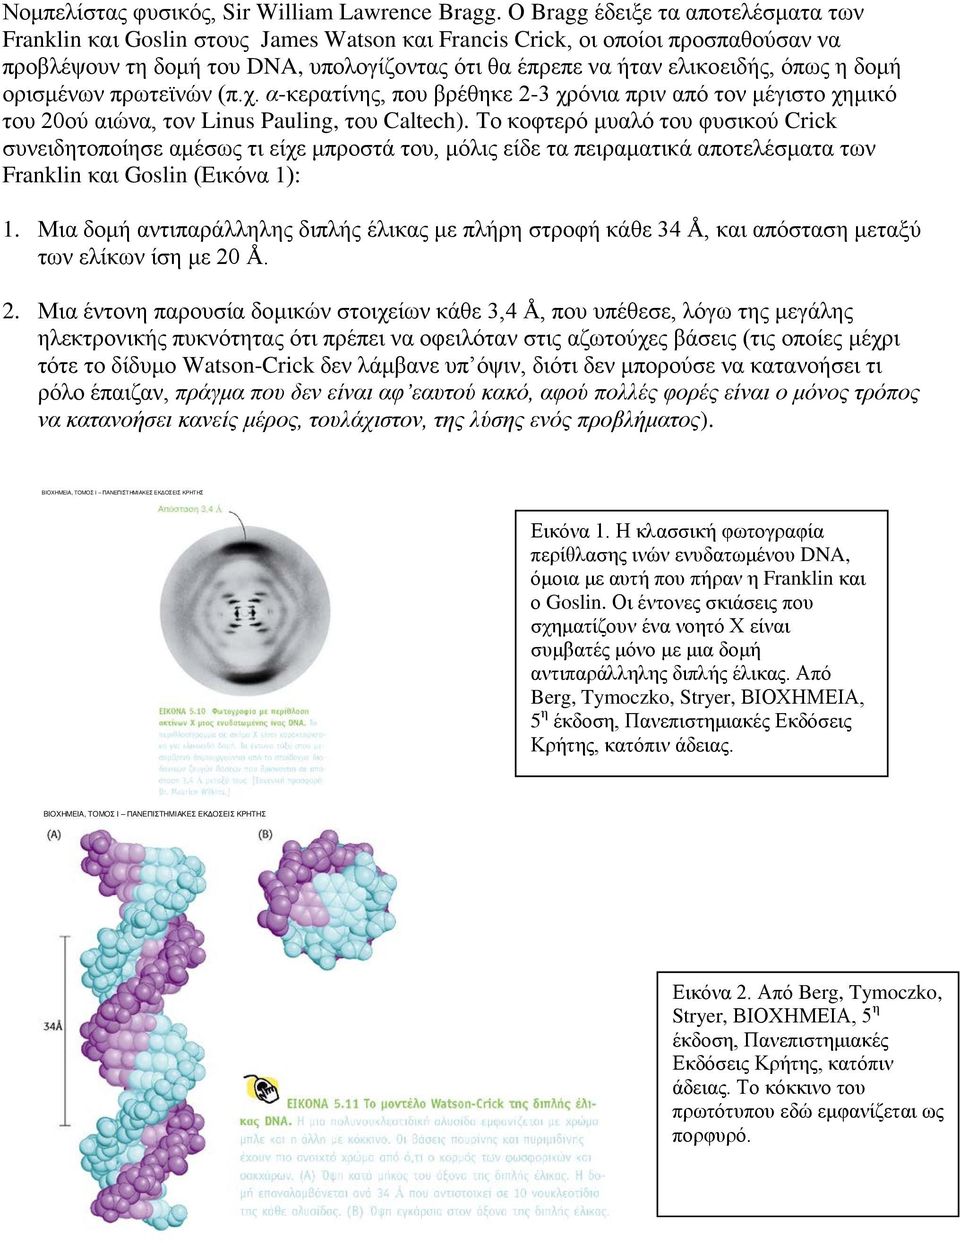 η δομή ορισμένων πρωτεϊνών (π.χ. α-κερατίνης, που βρέθηκε 2-3 χρόνια πριν από τον μέγιστο χημικό του 20ού αιώνα, τον Linus Pauling, του Caltech).